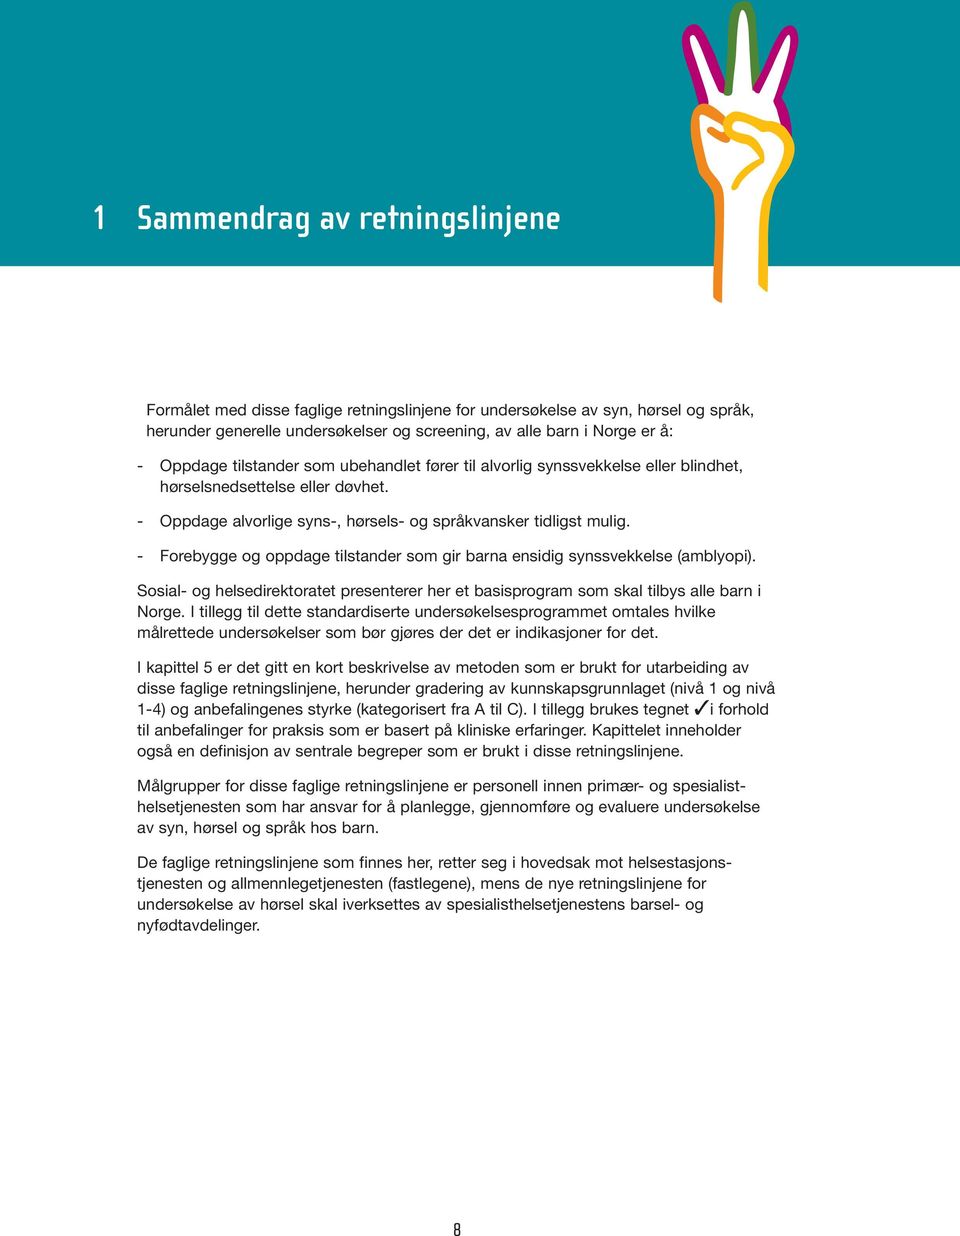 - Forebygge og oppdage tilstander som gir barna ensidig synssvekkelse (amblyopi). Sosial- og helsedirektoratet presenterer her et basisprogram som skal tilbys alle barn i Norge.